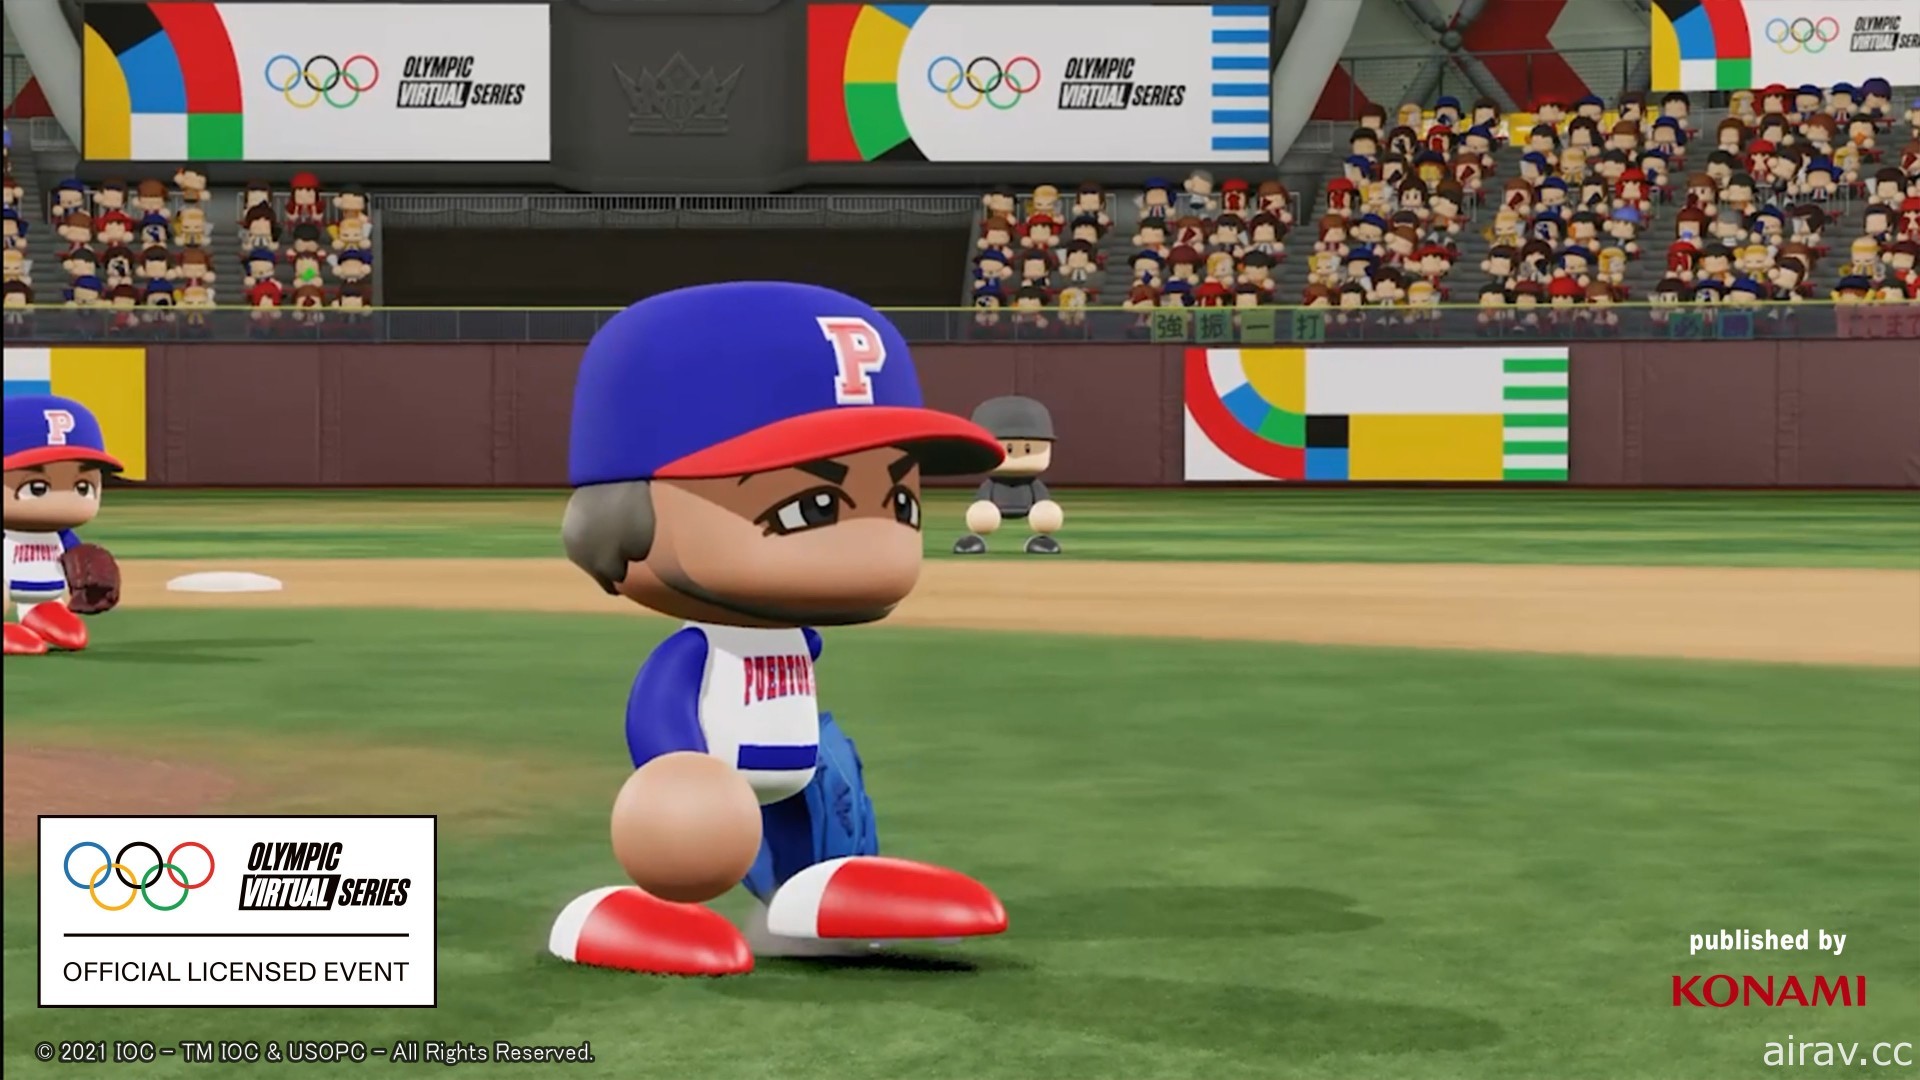 首届奧林匹克虛擬系列賽將在《eBASEBALL 實況野球 2020》遊戯中舉行